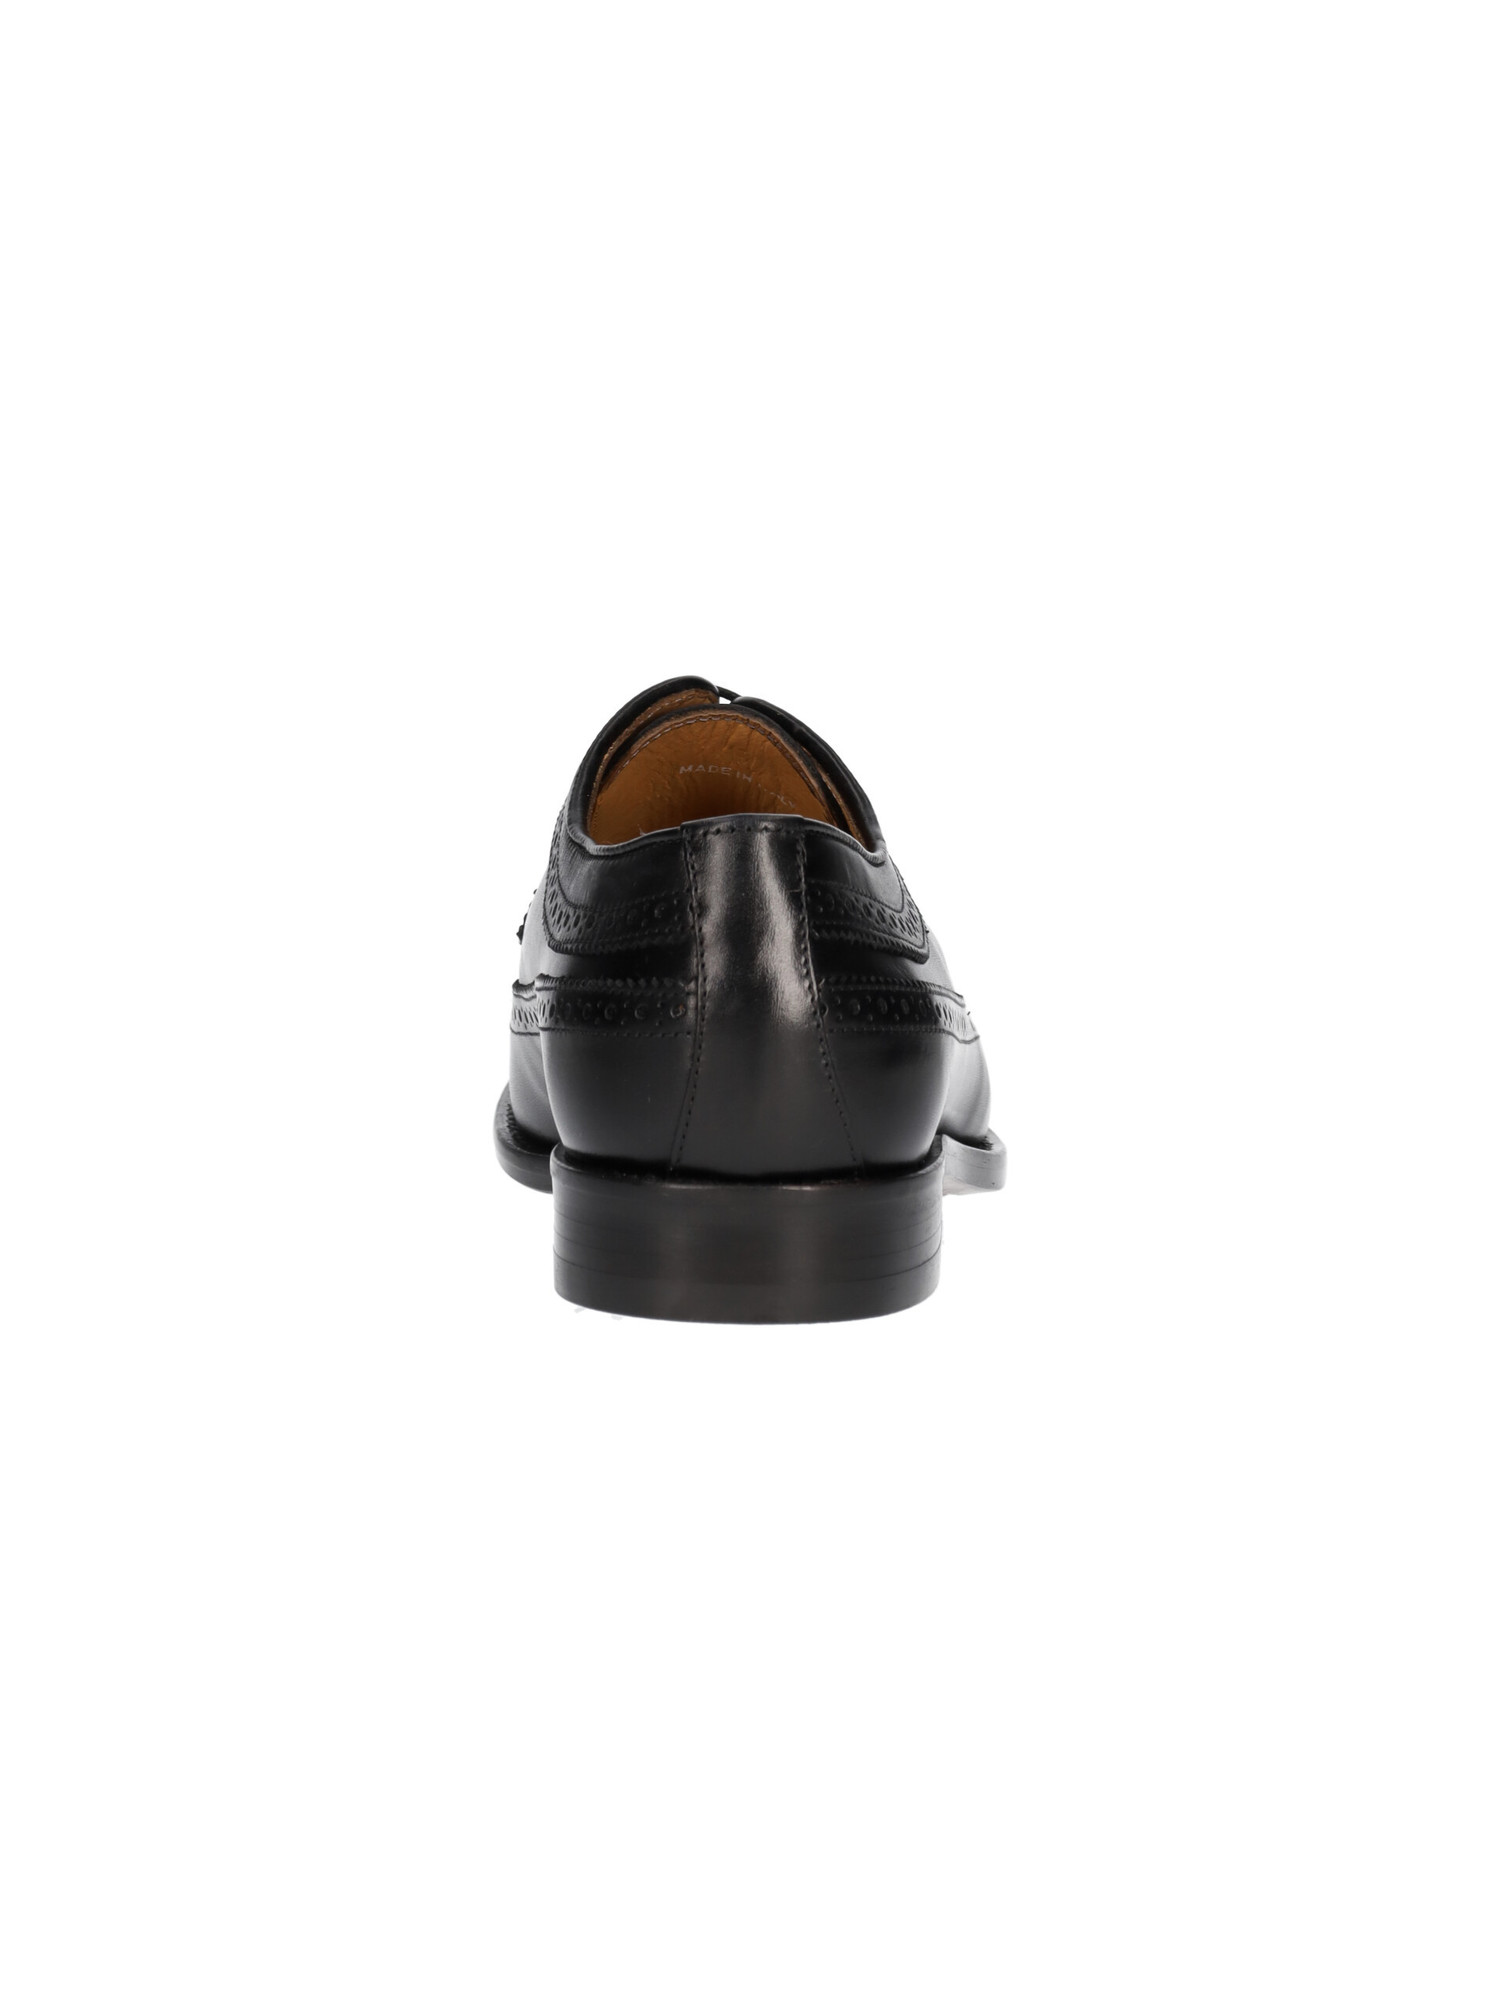 scarpa-elegante-mercanti-fiorentini-uomo-in-pelle-nera-1128c7